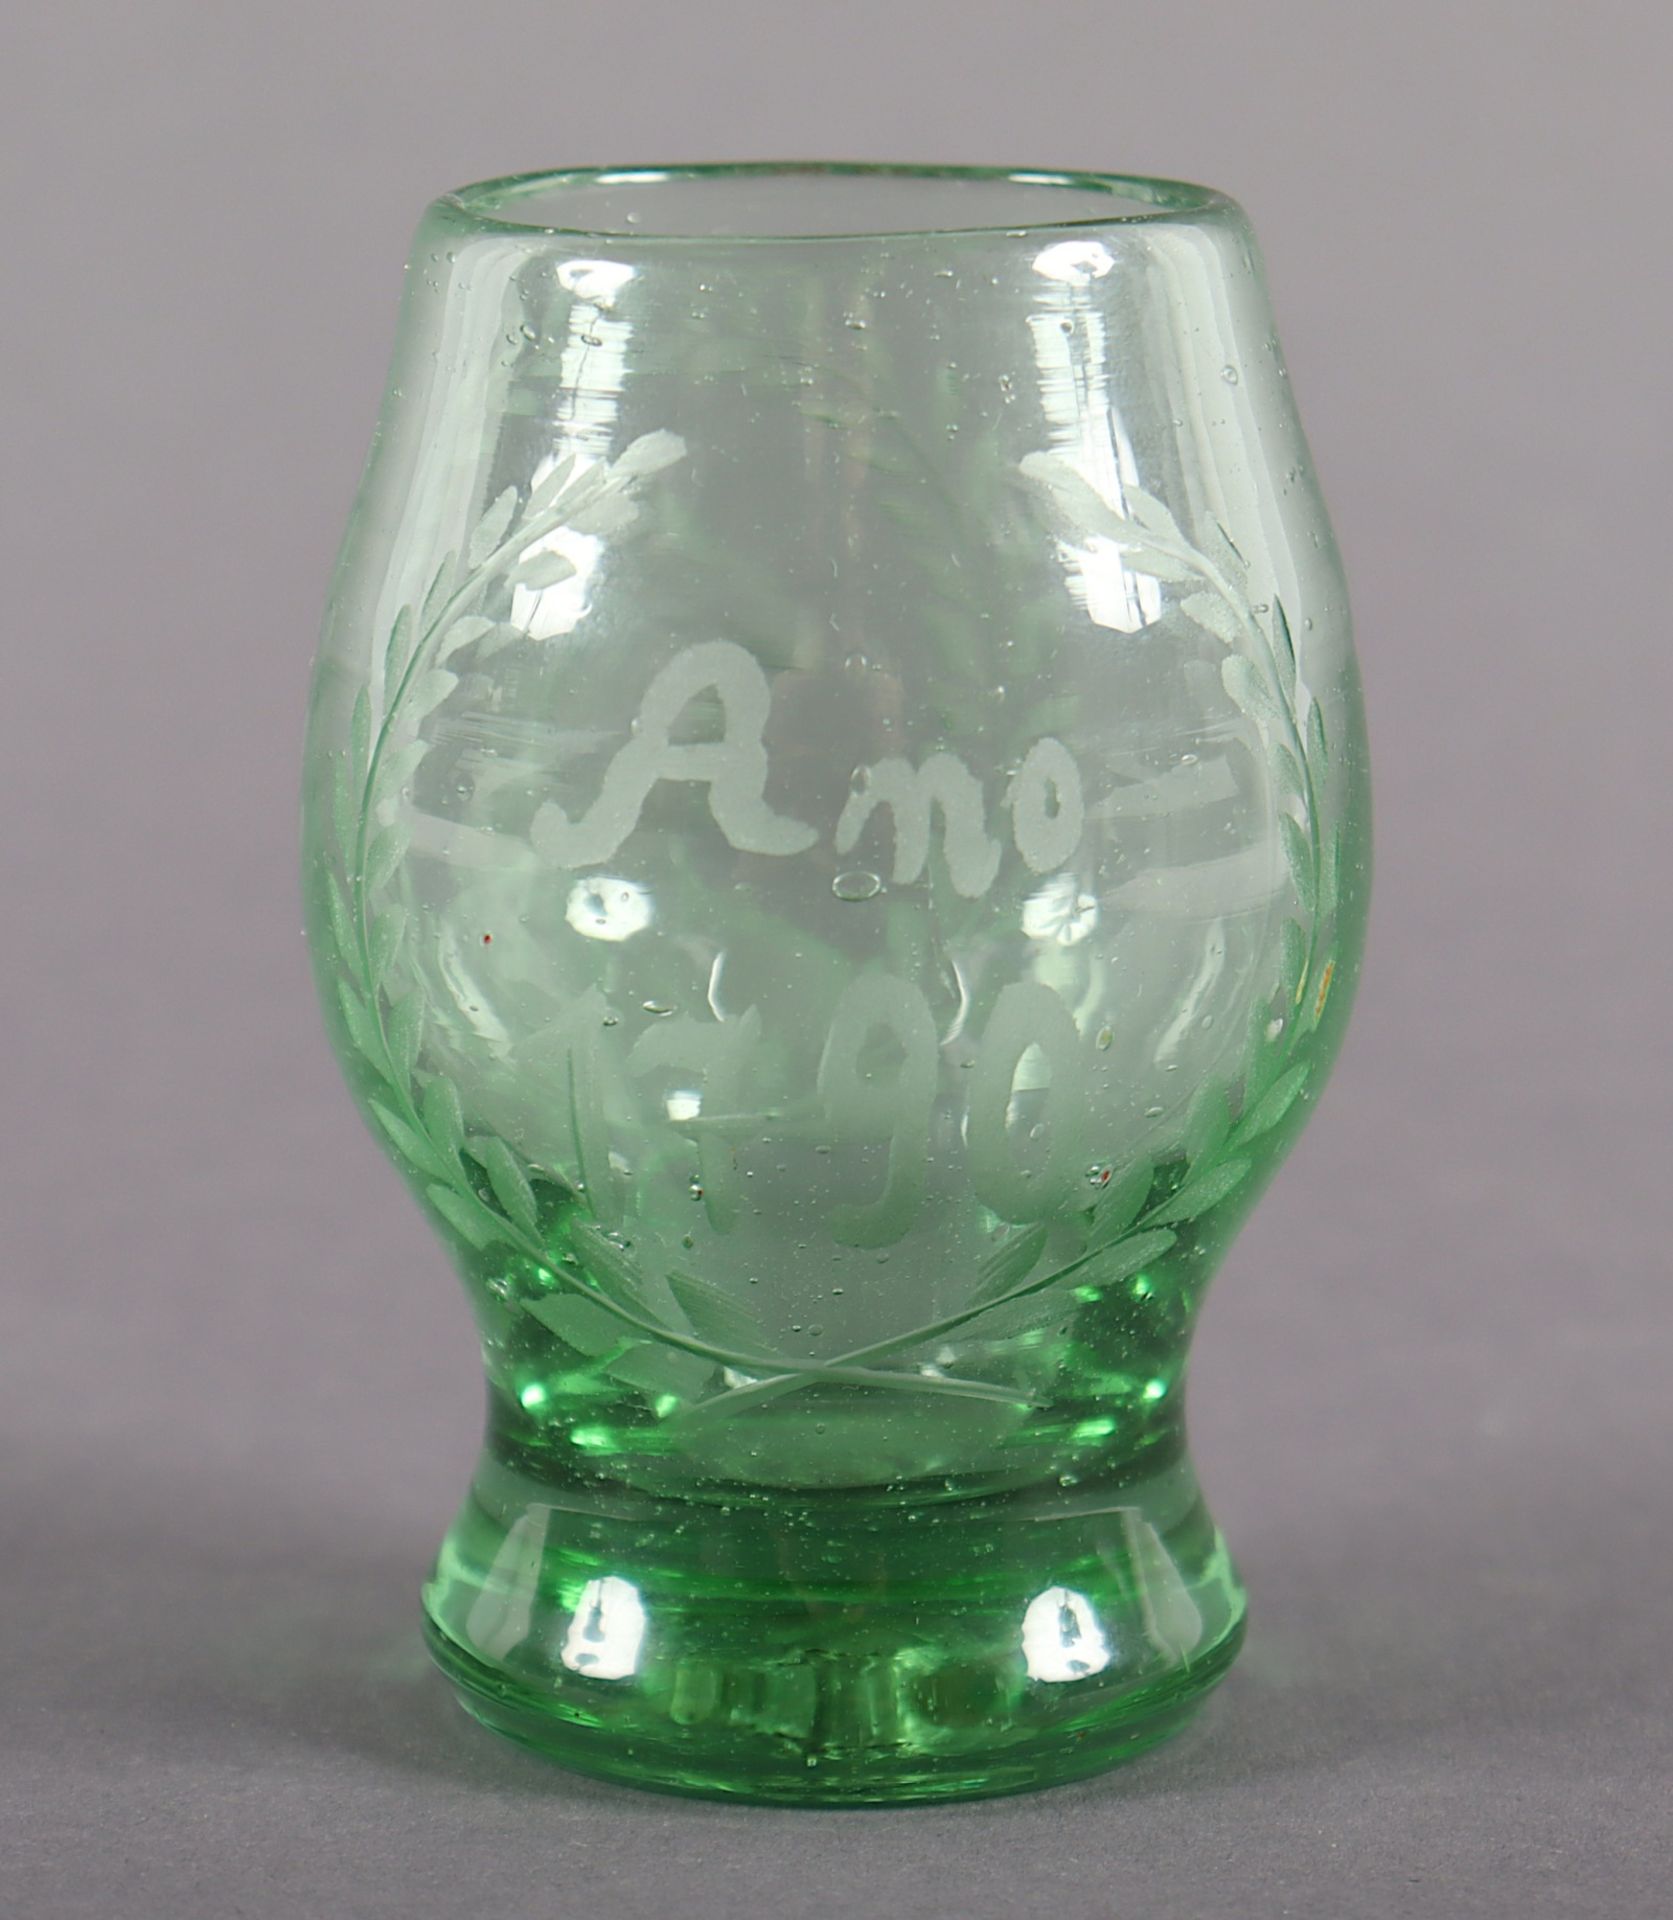 KLEINER BECHER, grünes Glas, Gravurdekor, Abriss, H 8,5, wohl DEUTSCH, datiert "1790"  - Bild 2 aus 3